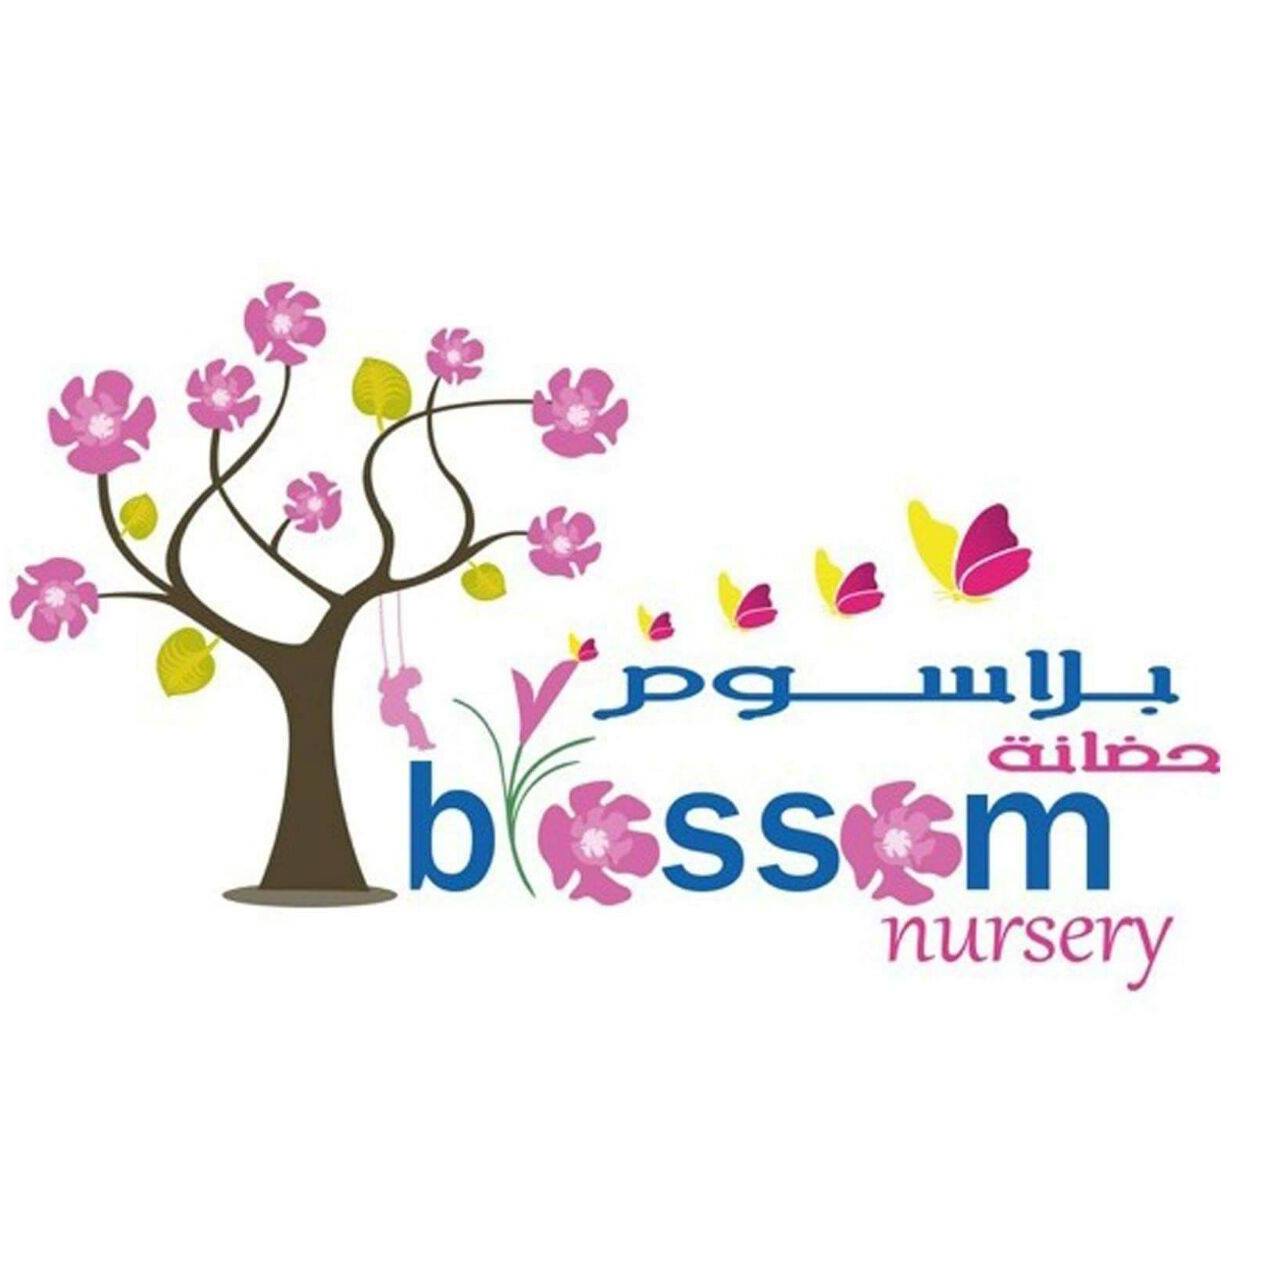 Nursery logo Blossom Nursery